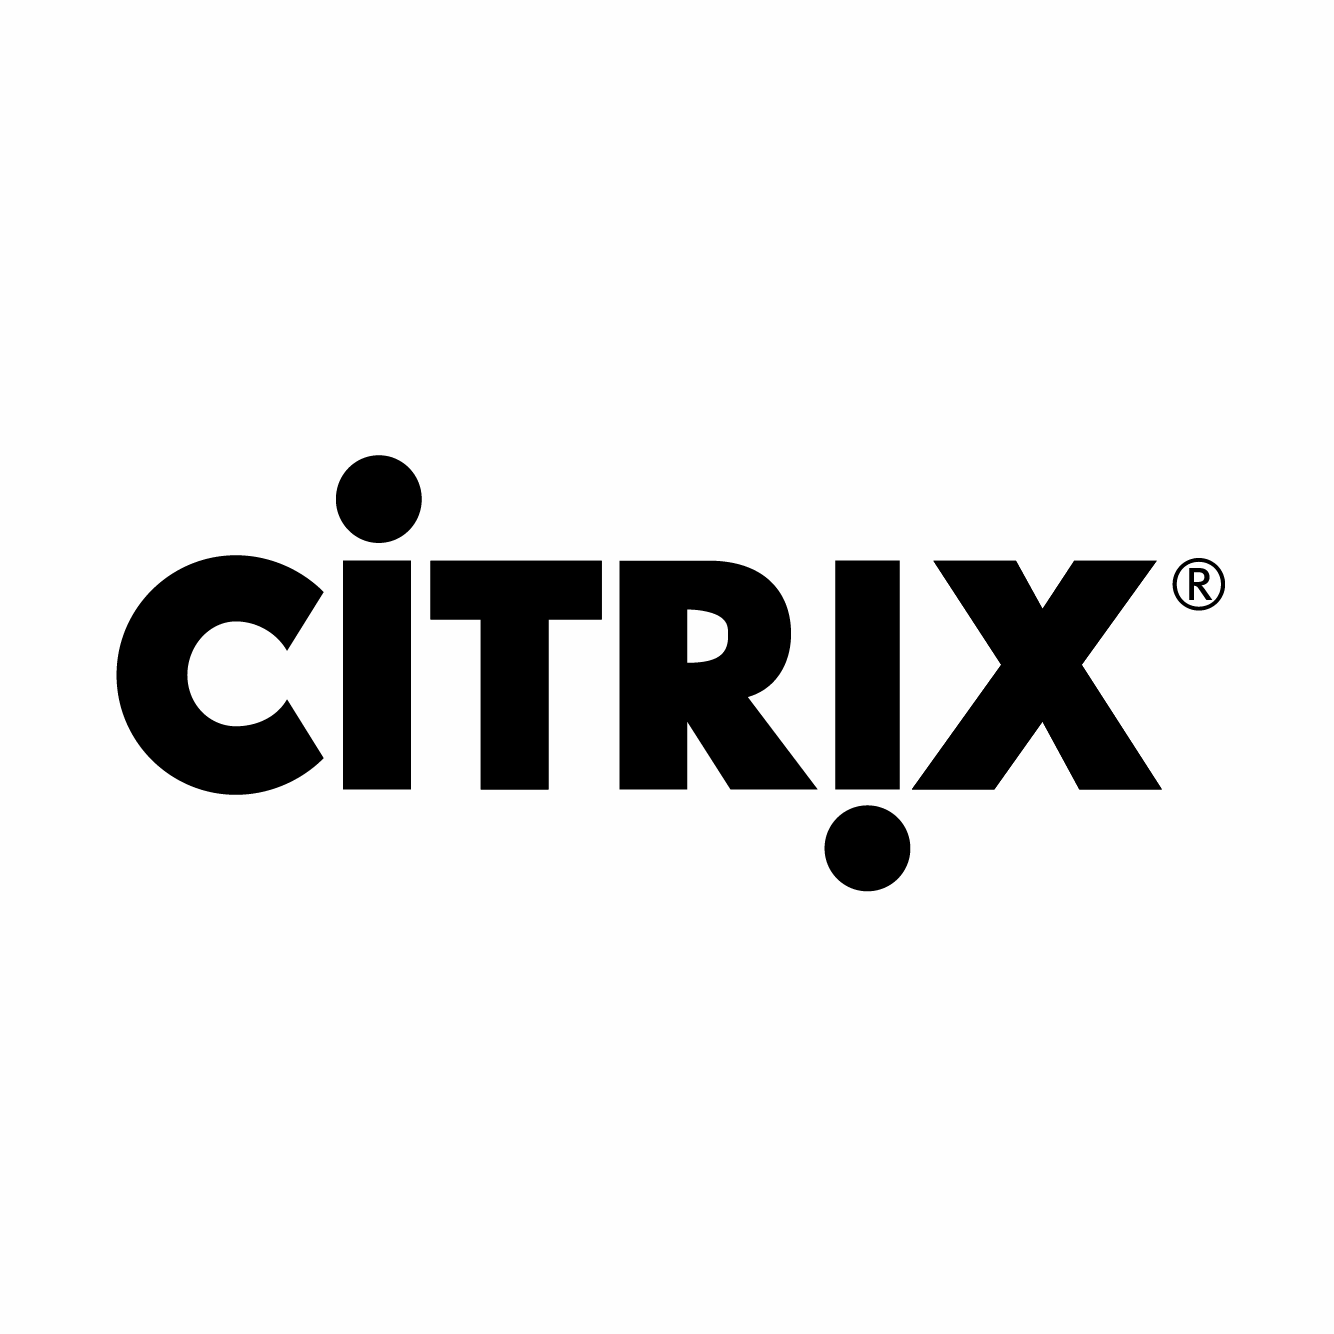 https://www.securetech.ae/wp-content/uploads/2019/02/12.CITRIX.png